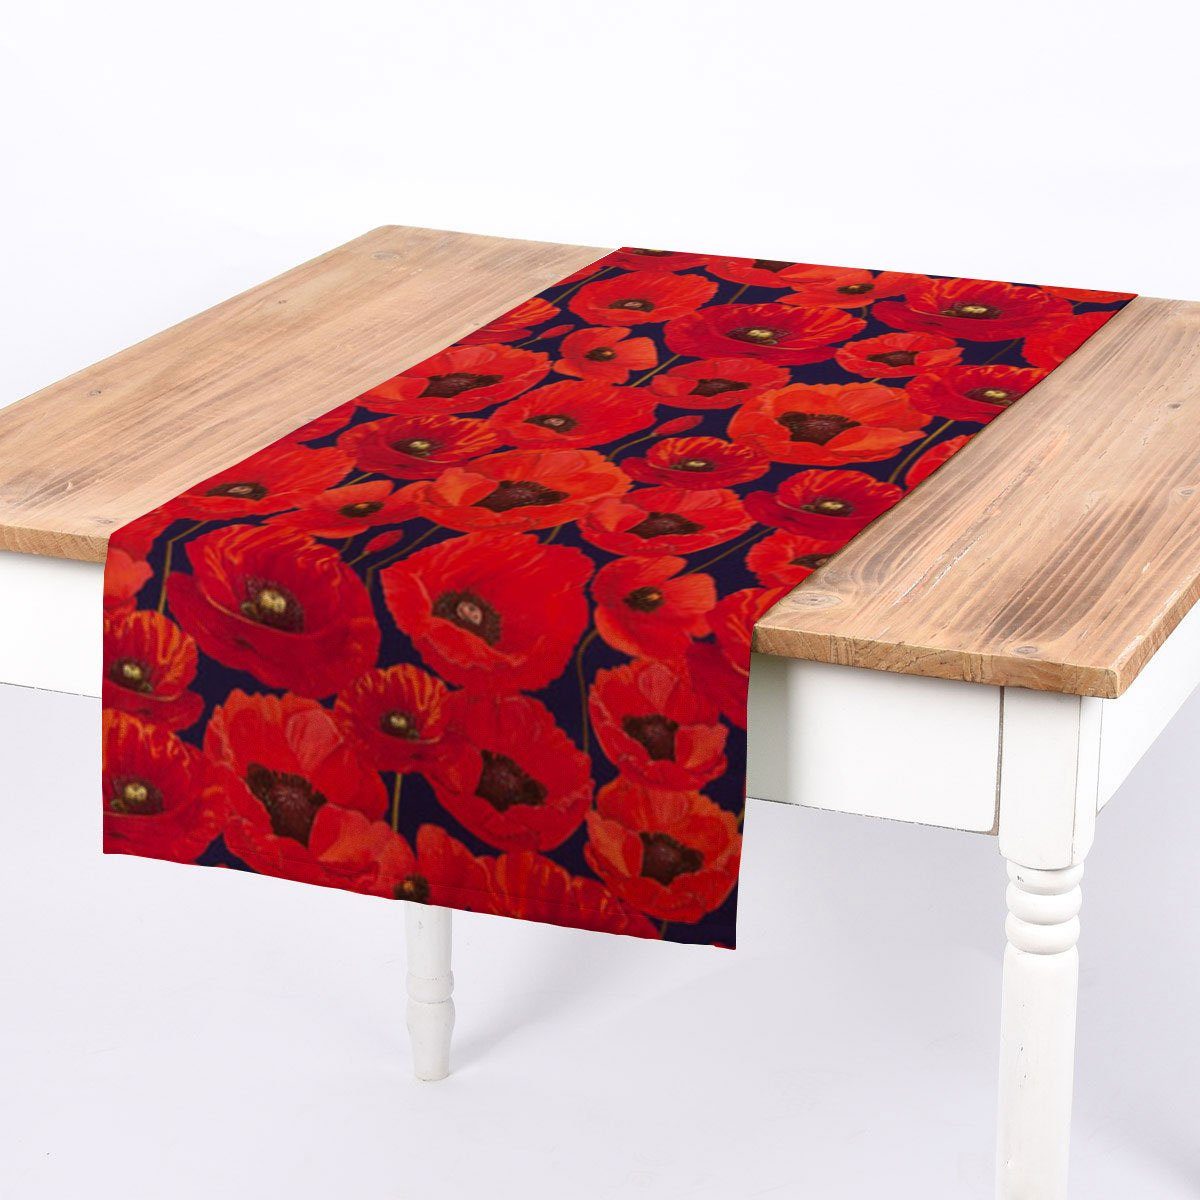 SCHÖNER LEBEN. Tischläufer SCHÖNER LEBEN. Tischläufer Outdoor Mohnblumen rot dunkelblau 40x160cm, handmade